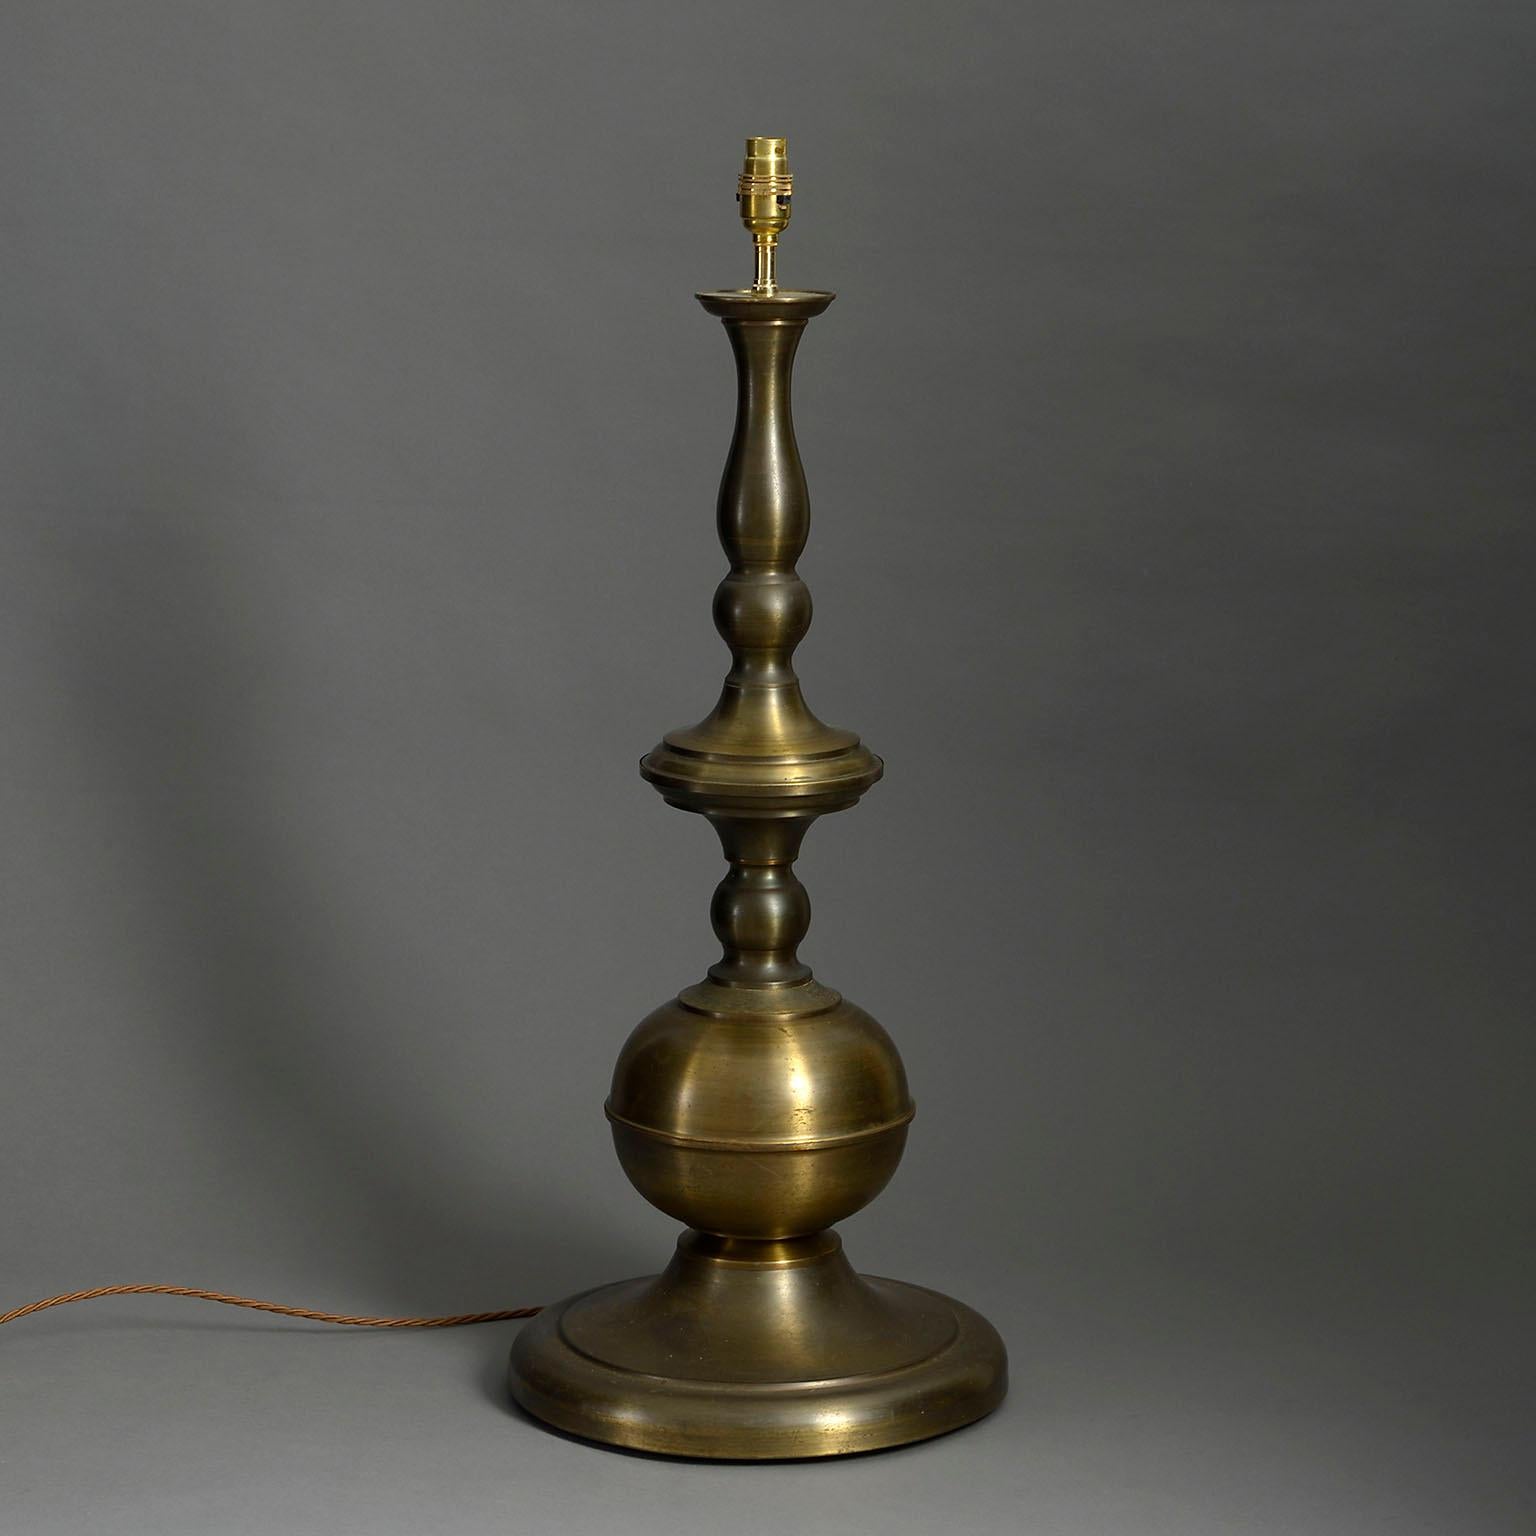 Une base de lampe en laiton tourné du milieu du XXe siècle de grande taille et de patine douce.

Les dimensions se rapportent à la base en laiton et ne comprennent pas les accessoires électriques.

Câblé selon les normes britanniques. Cette lampe